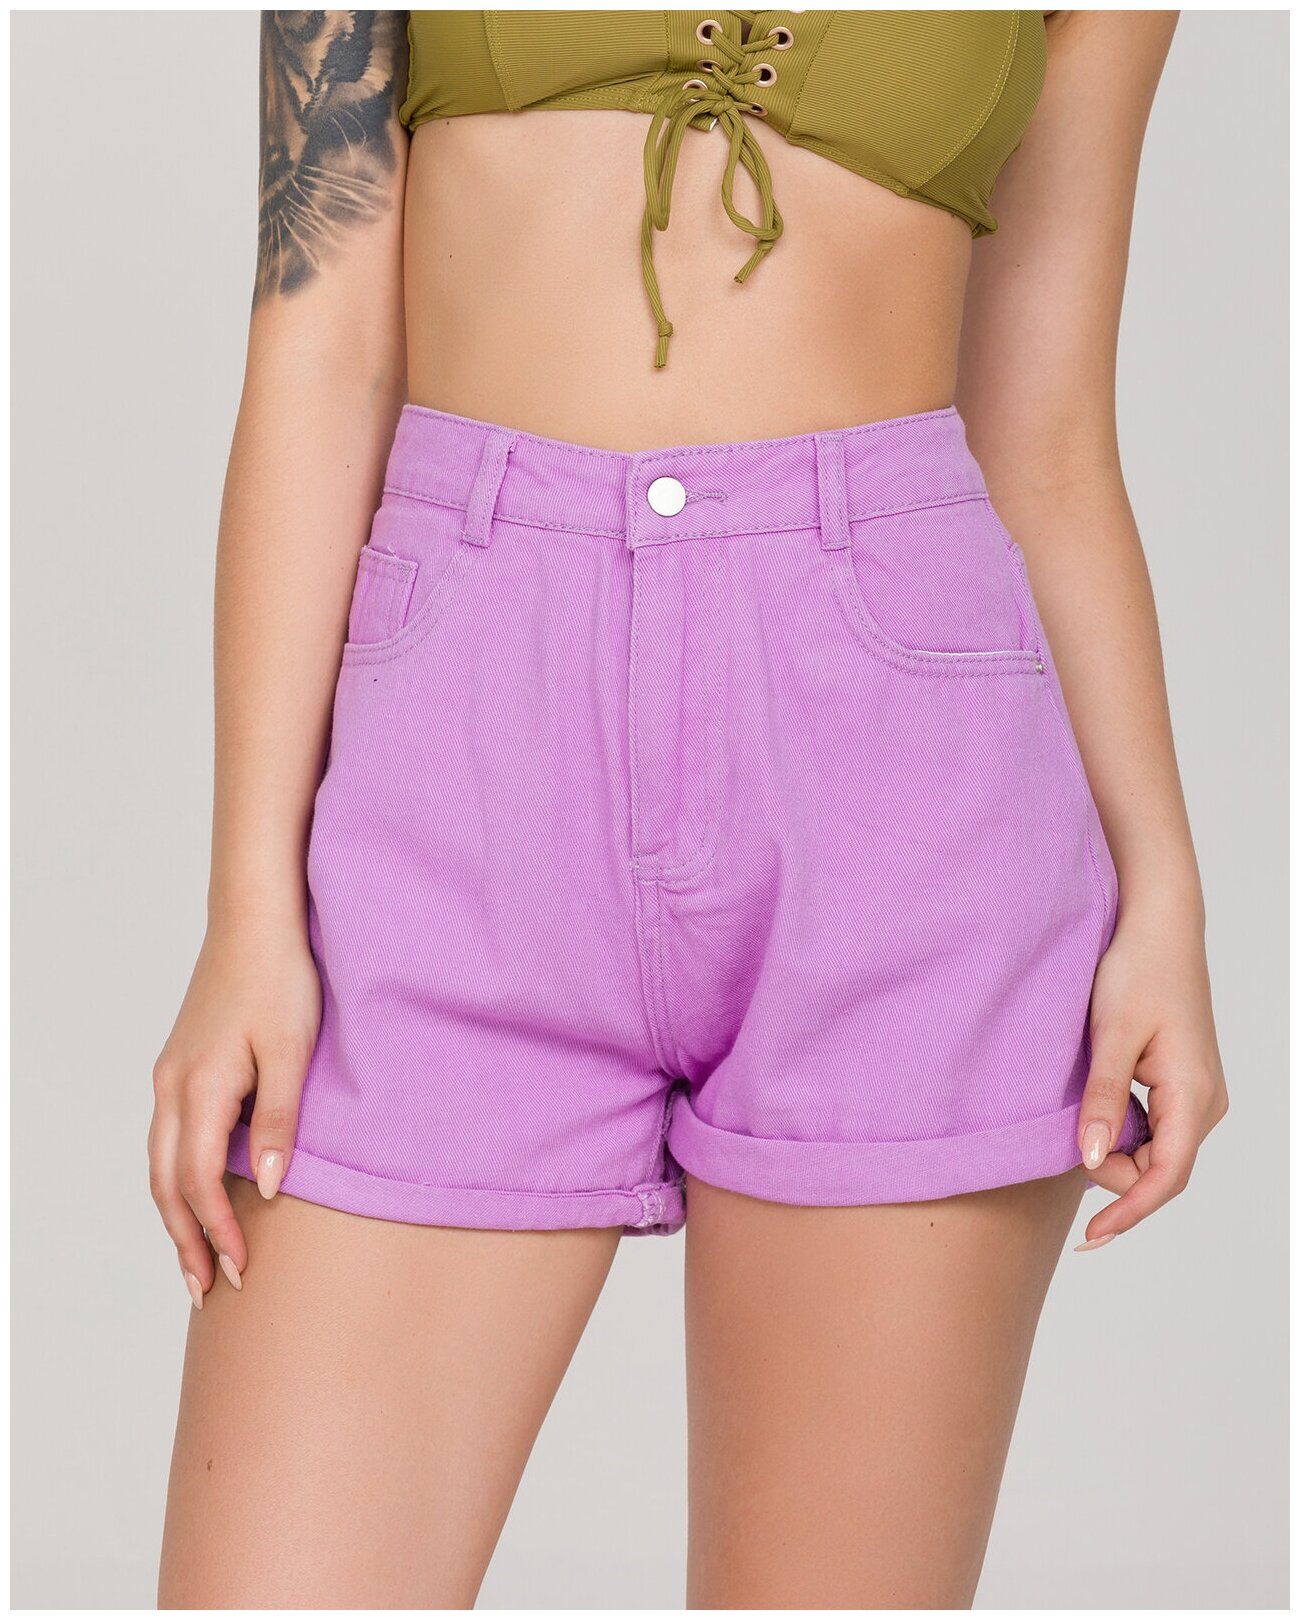 фото Джинсовые шорты женские katomi 100002191 фиолетовые 38